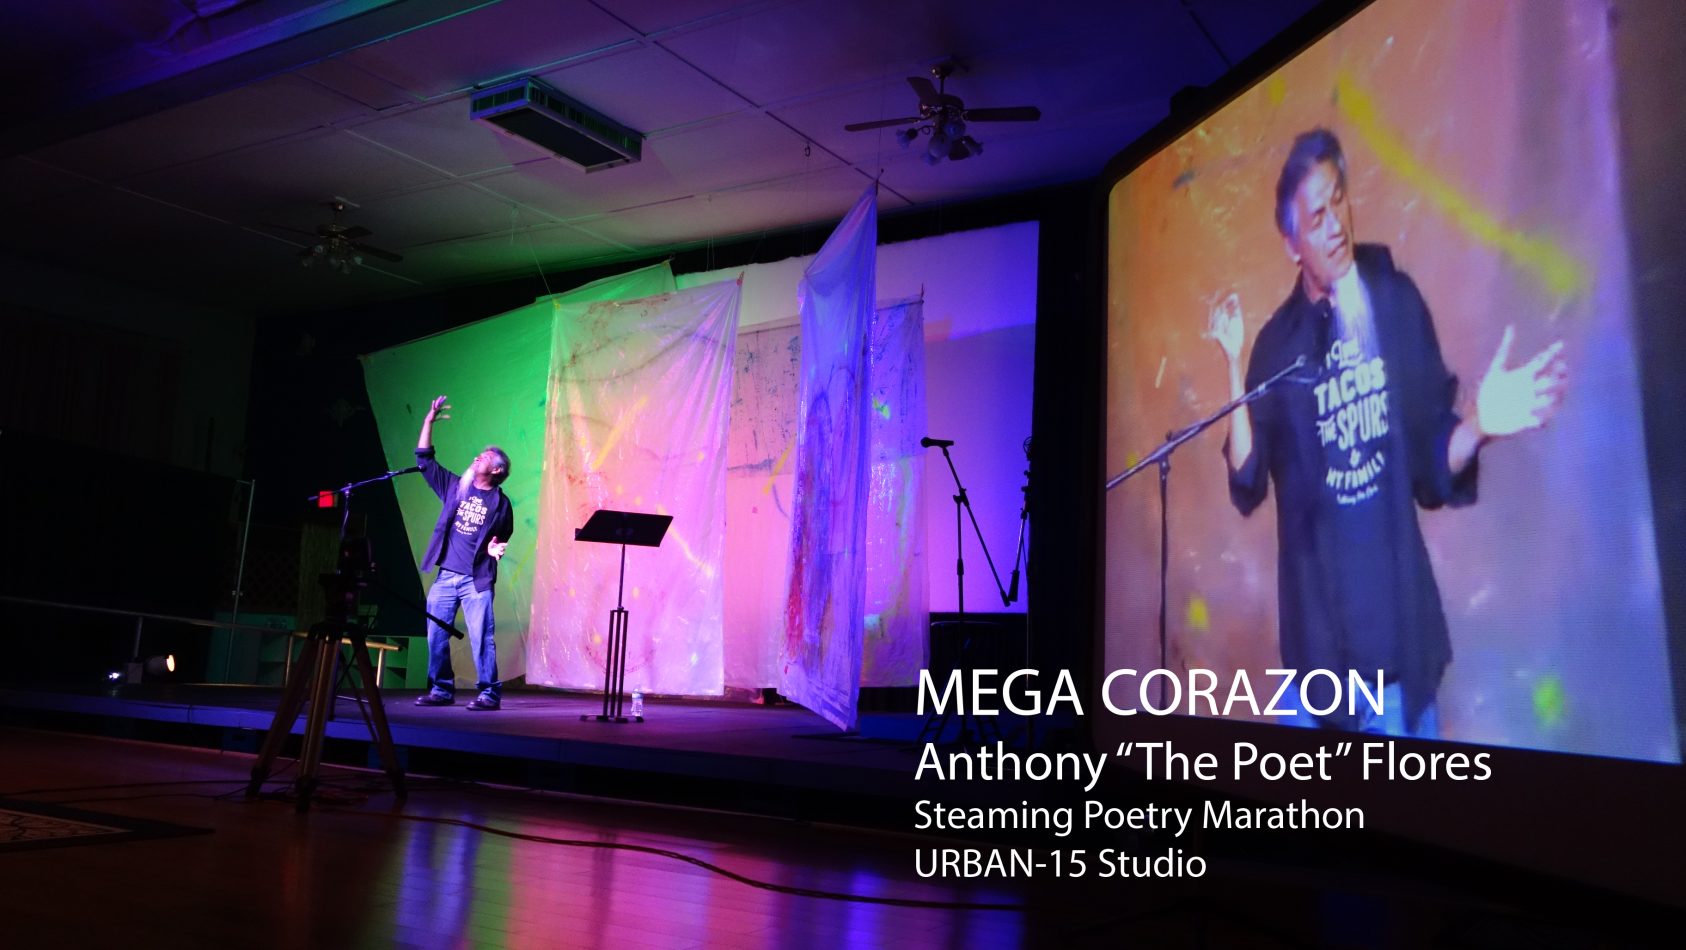 Gallery 1 - MEGA CORAZON - San Antonio's Marathon of Performance Poetry